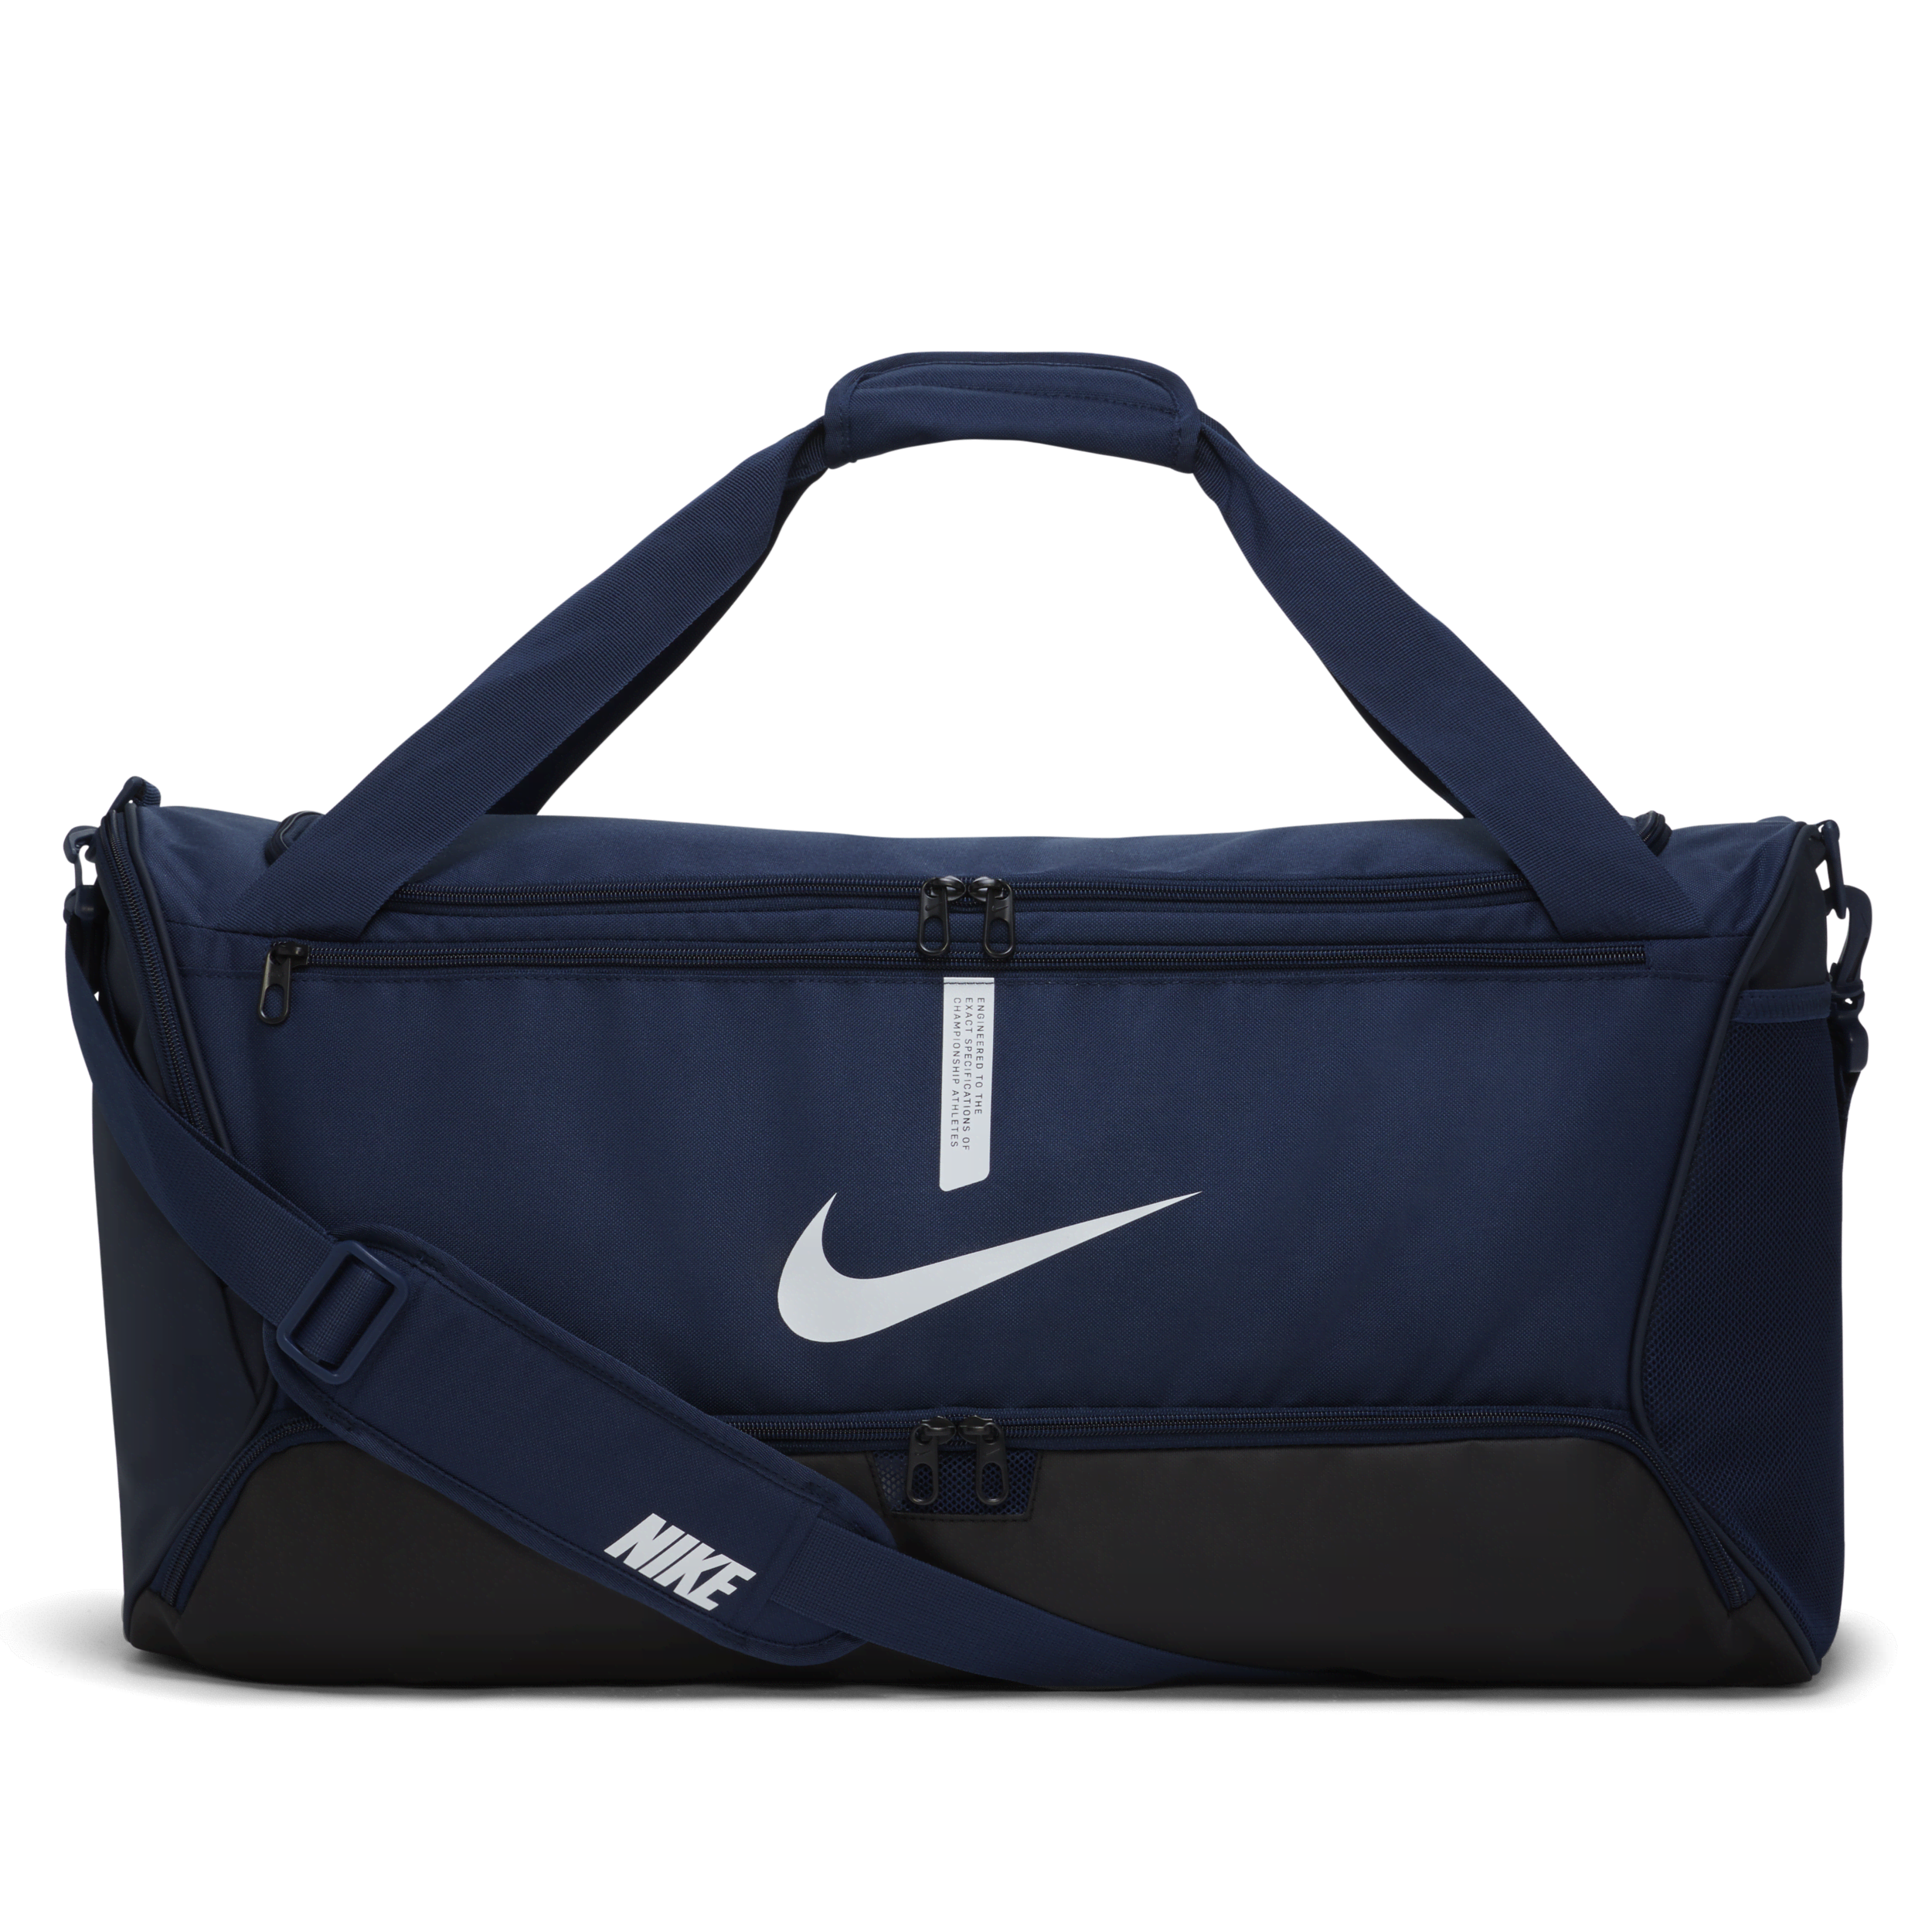 Nike Academy Team Voetbaltas (medium, 60 liter) - Blauw